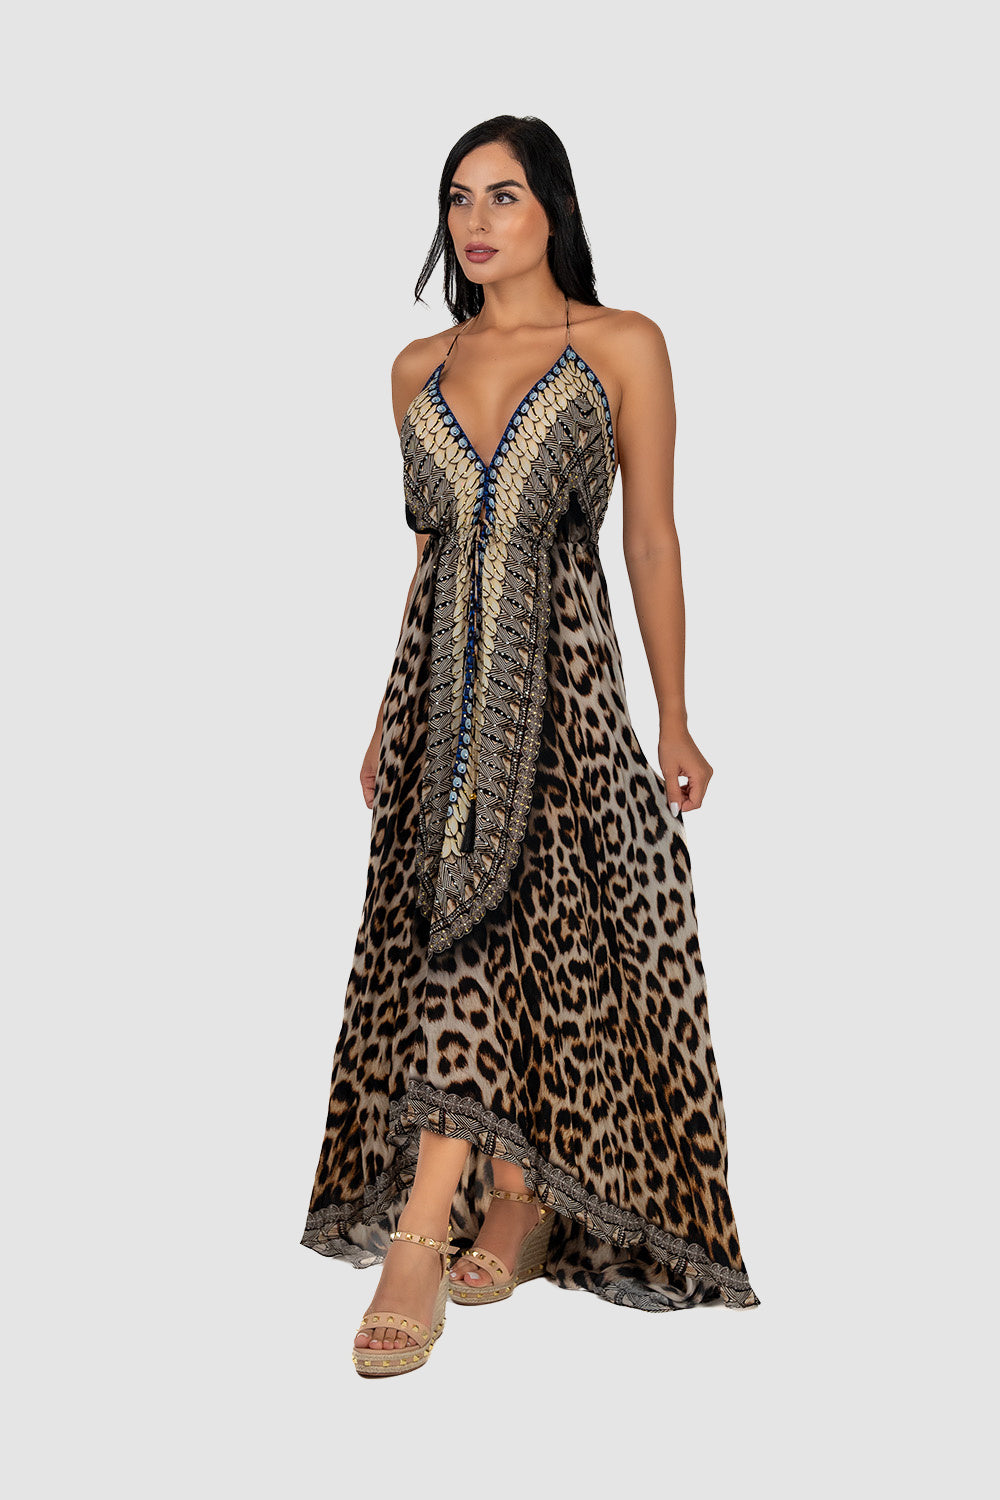 Casa Del Mar Cheetah Mirror Maxi Dress